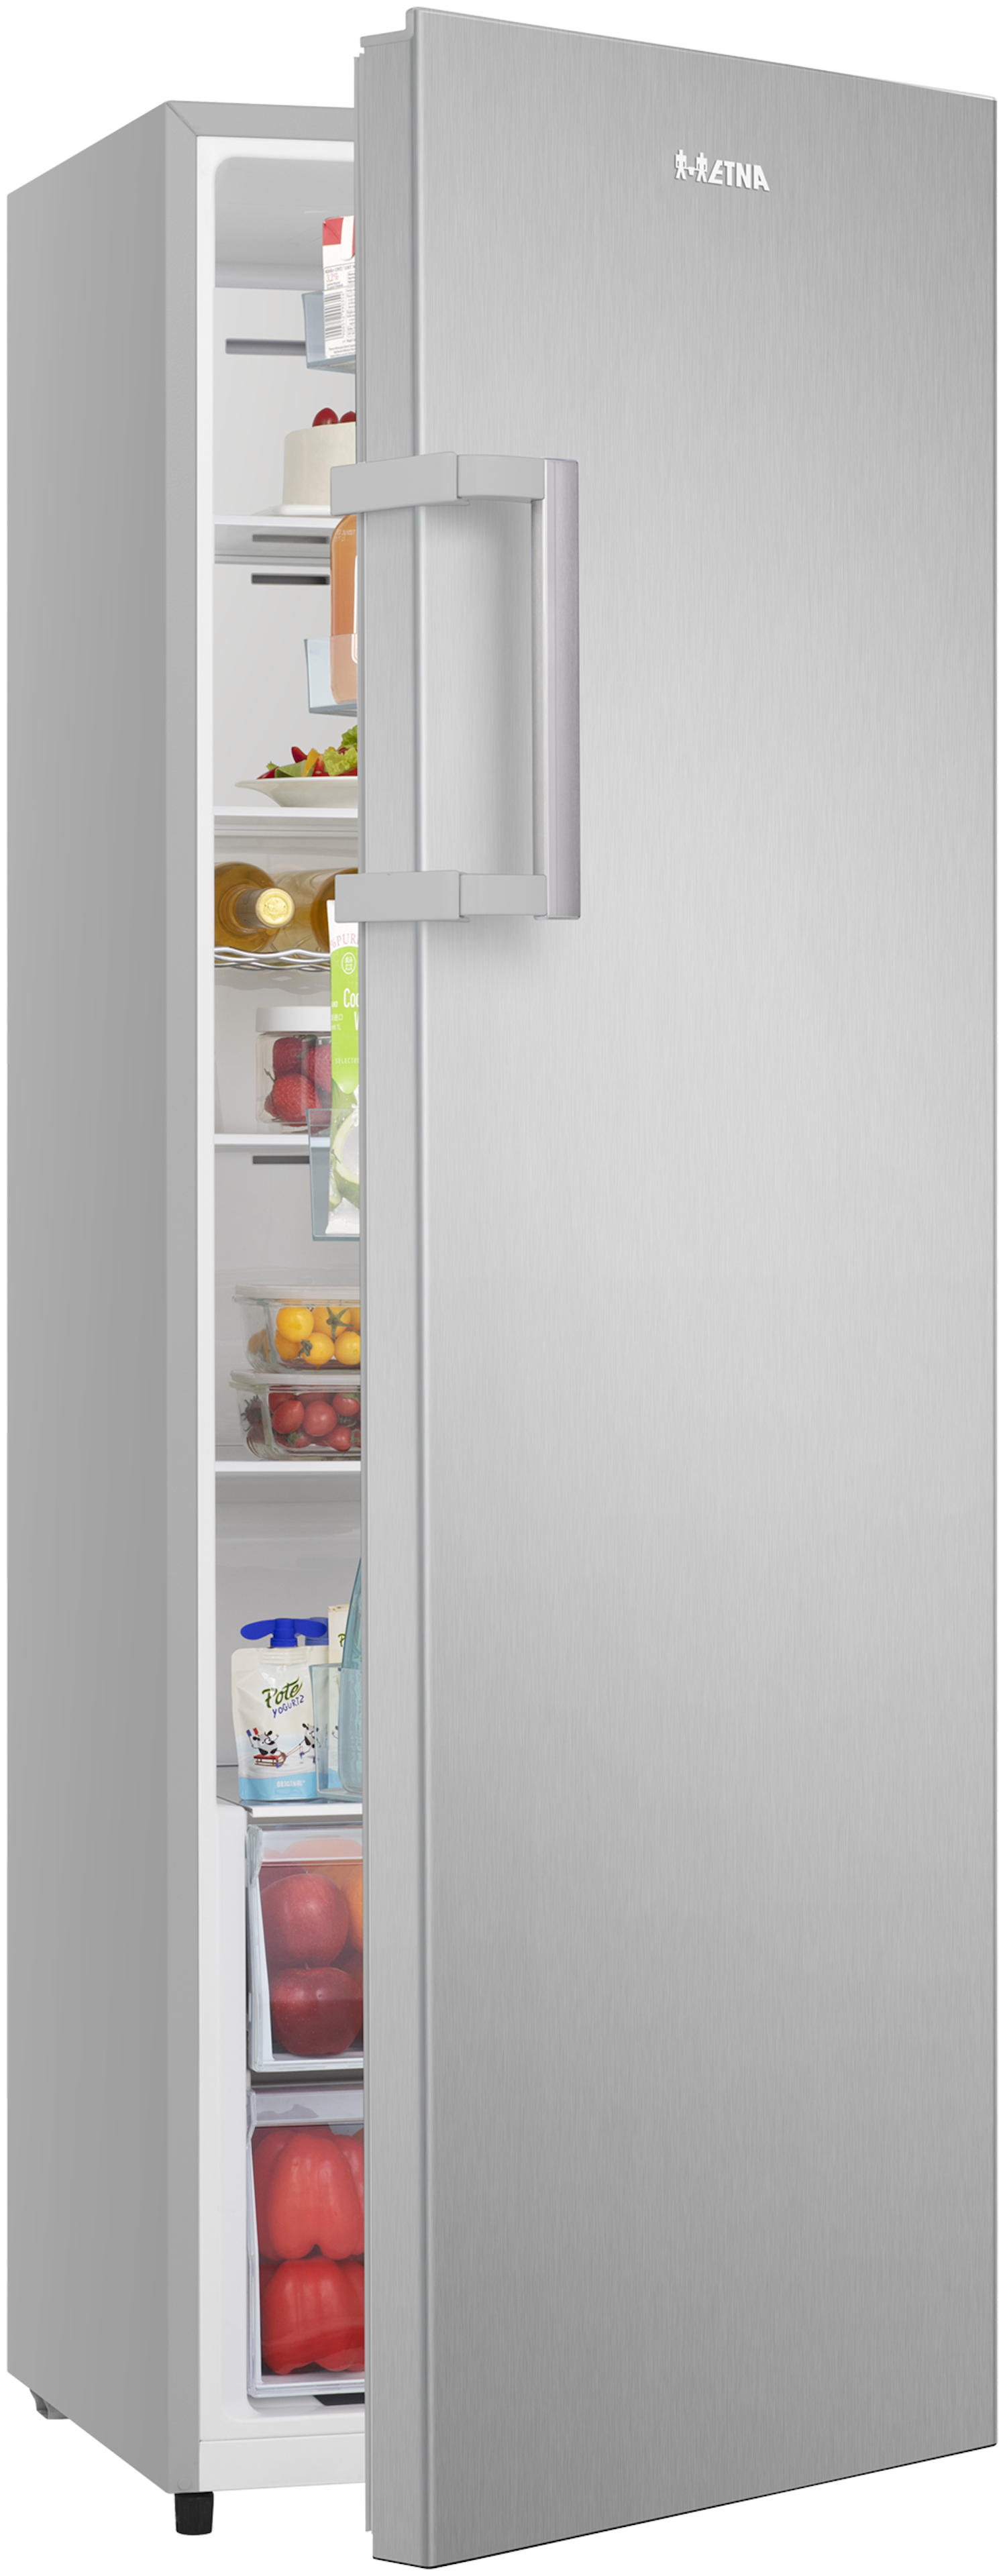 Etna KKV172RVS vrijstaand koelkast afbeelding 5